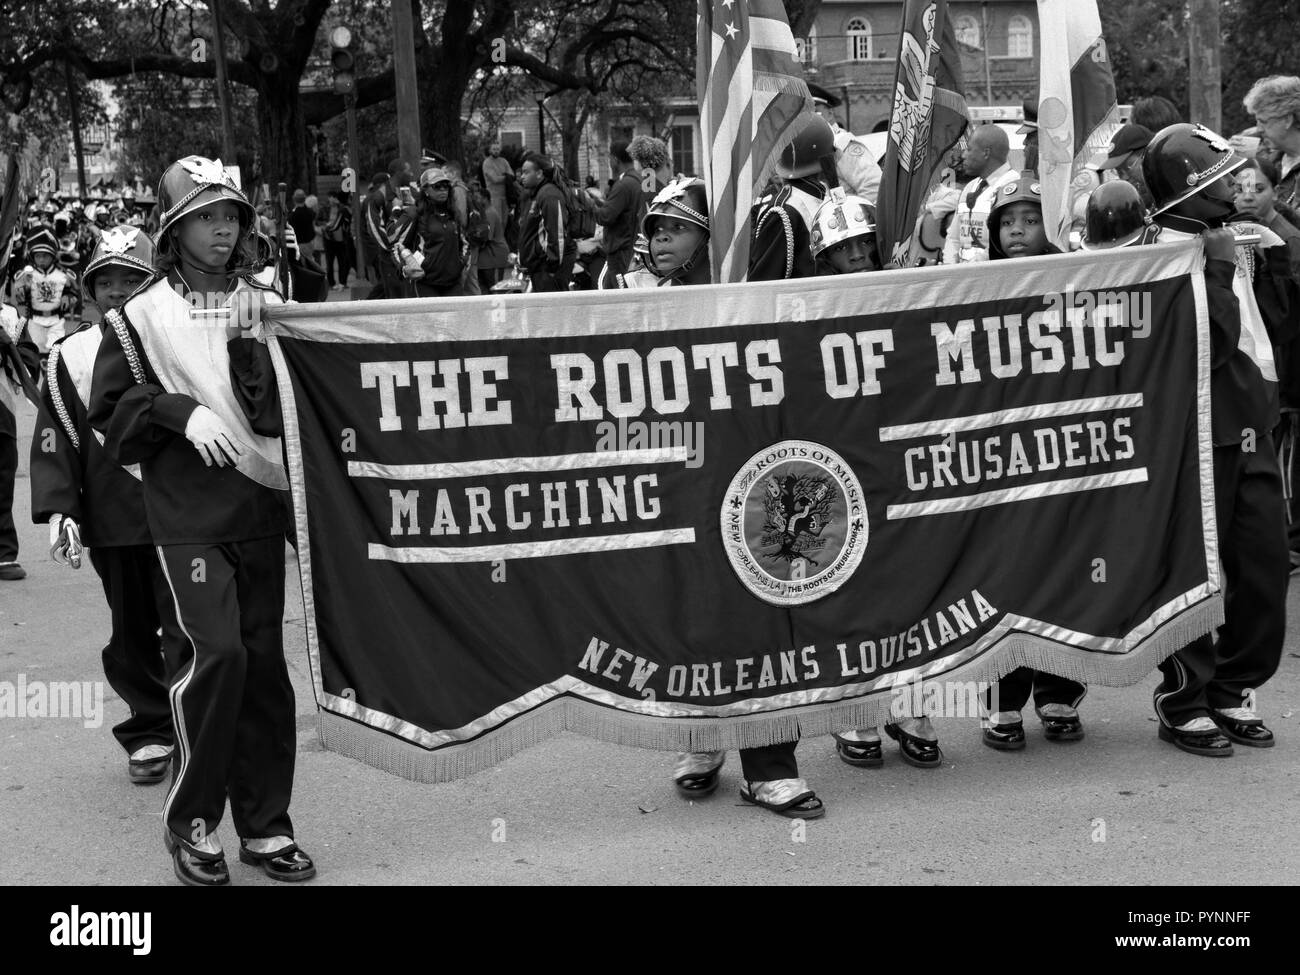 Les racines de la musique, marcher croisés, quartier des Jardins, La Nouvelle-Orléans, Louisiane, Etats-Unis. Banque D'Images